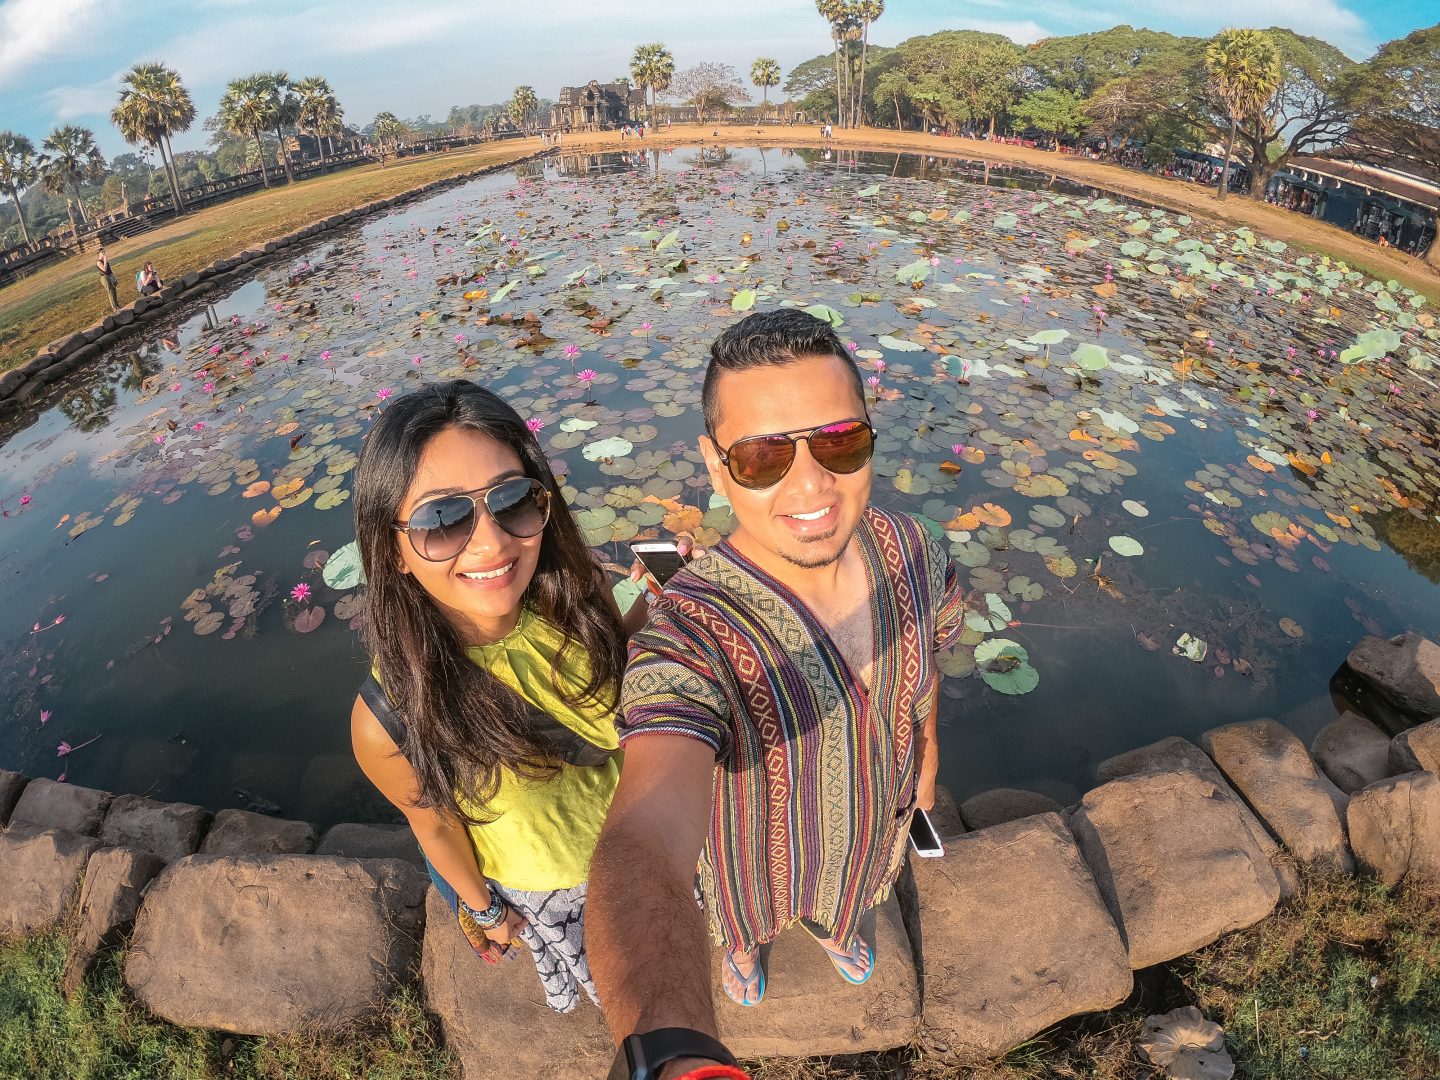 The Lily pond at Angkor